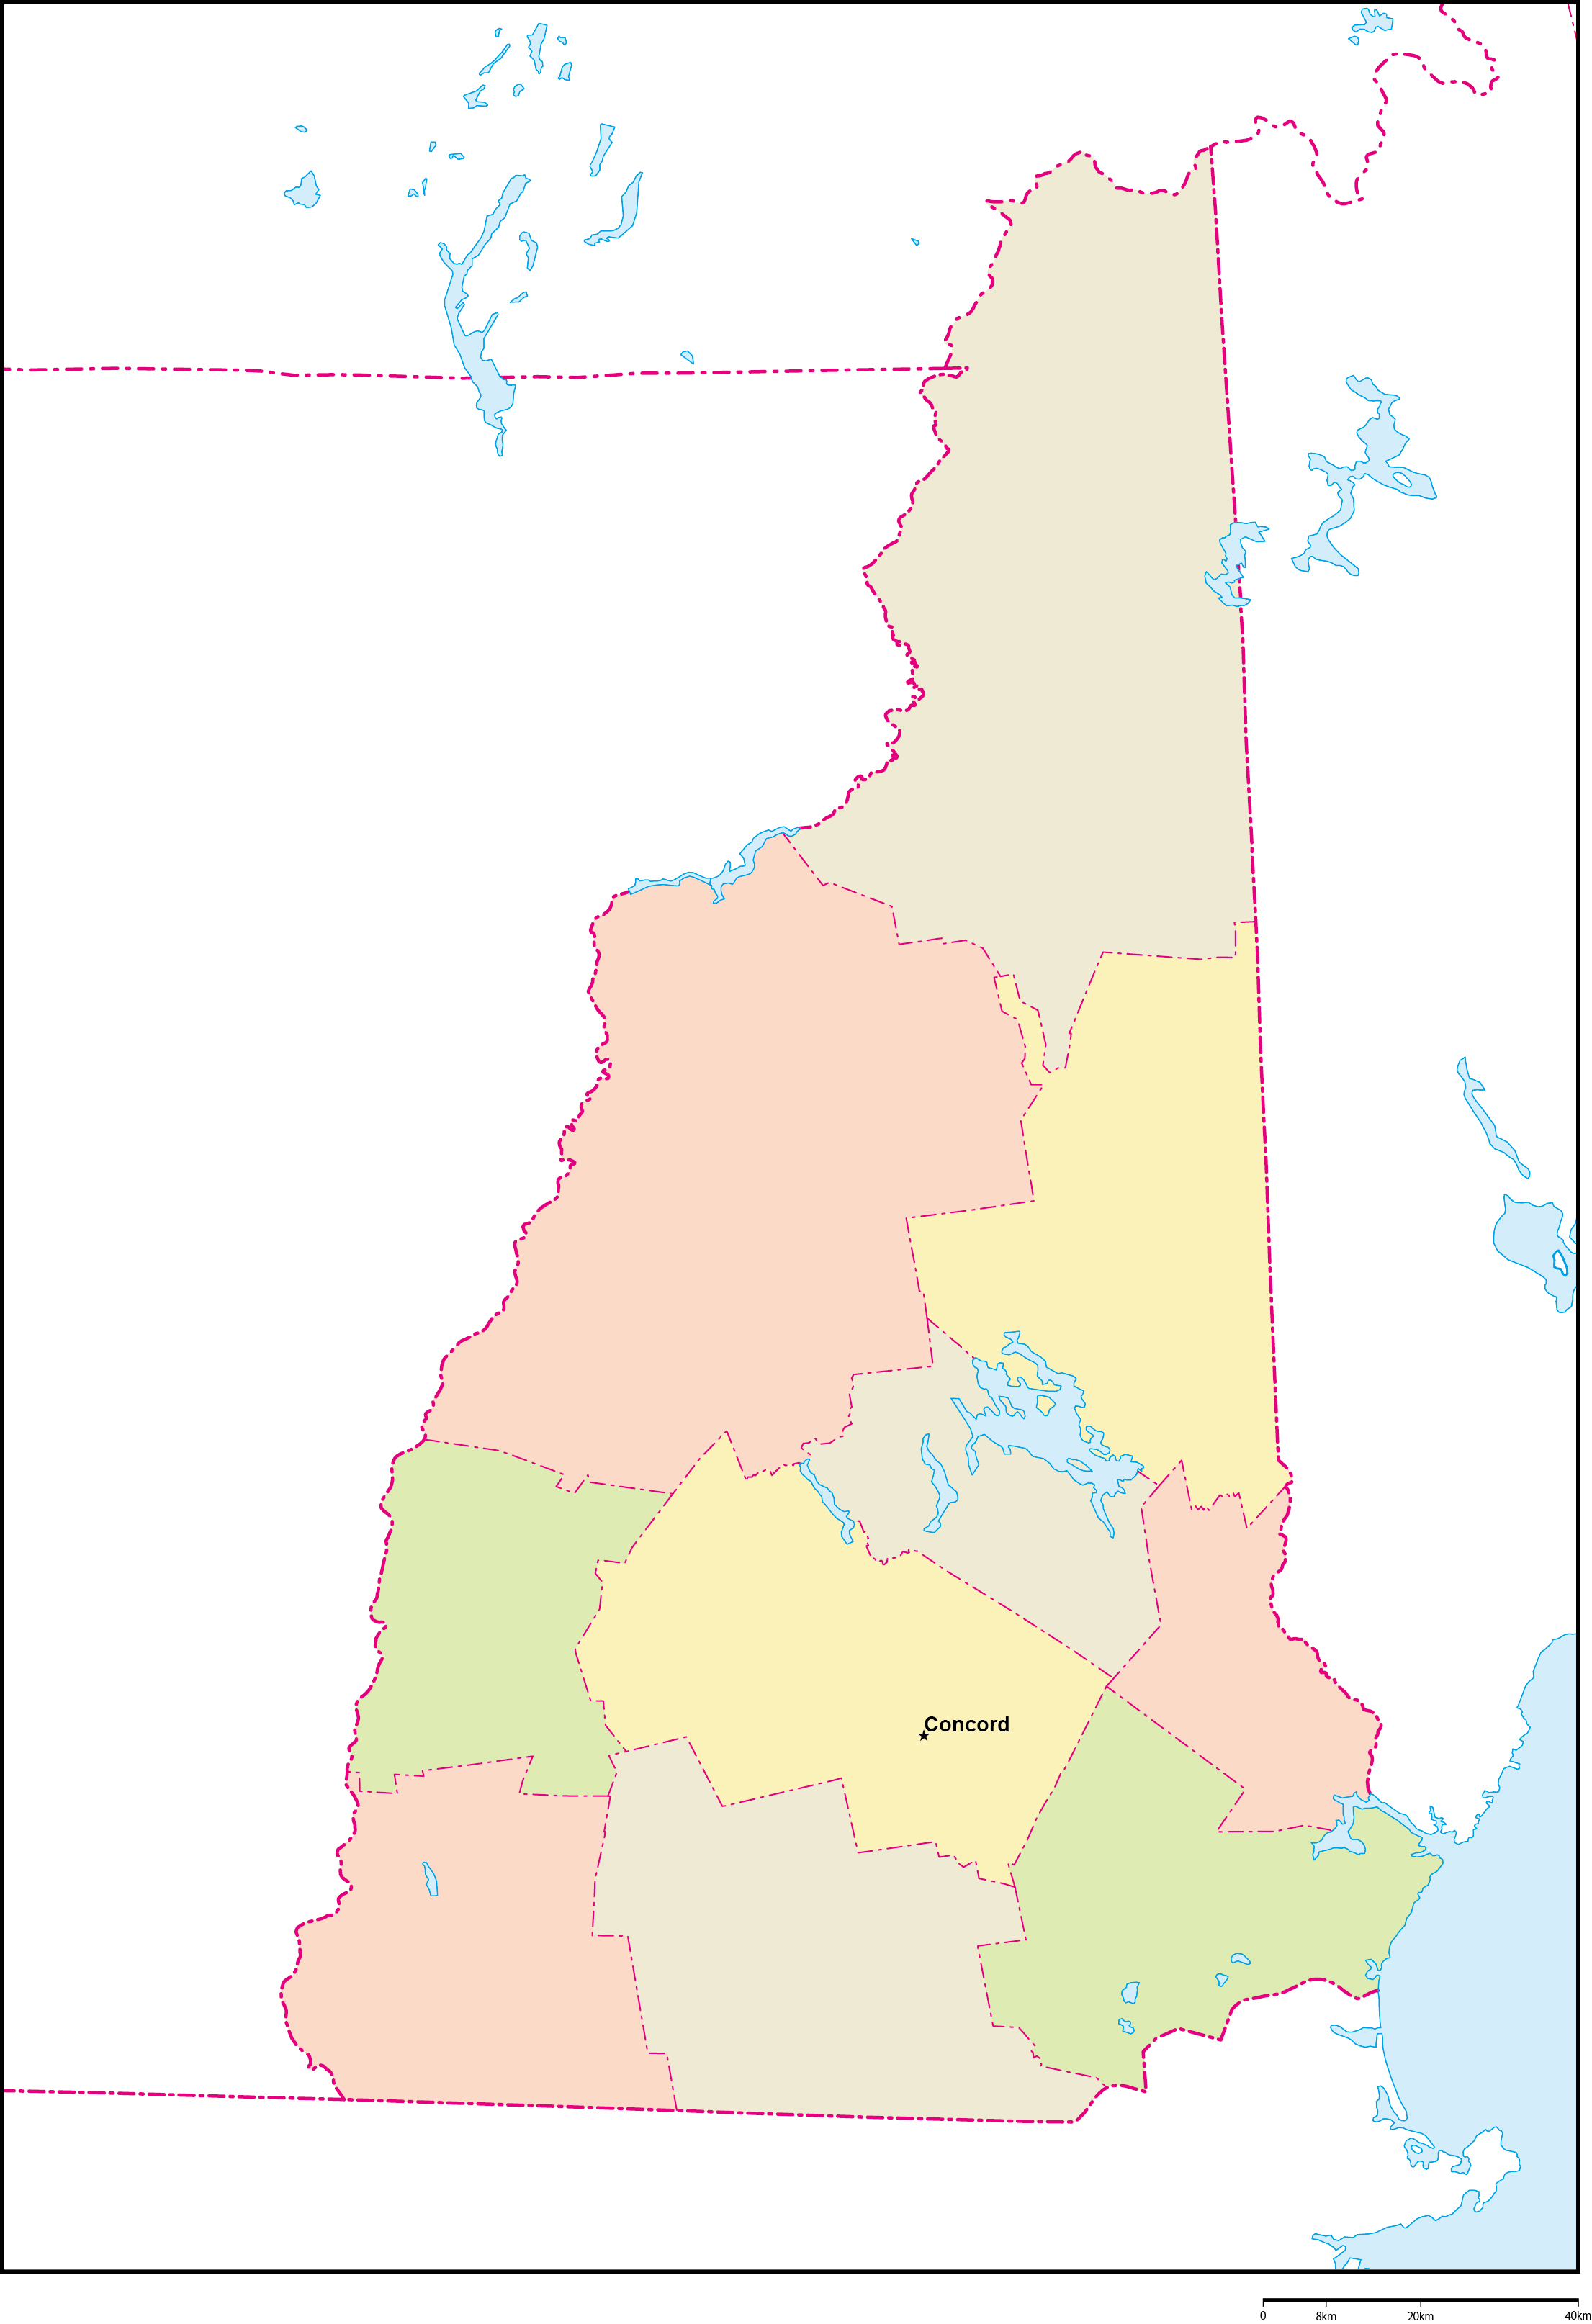 ニューハンプシャー州郡色分け地図州都あり(英語)フリーデータの画像